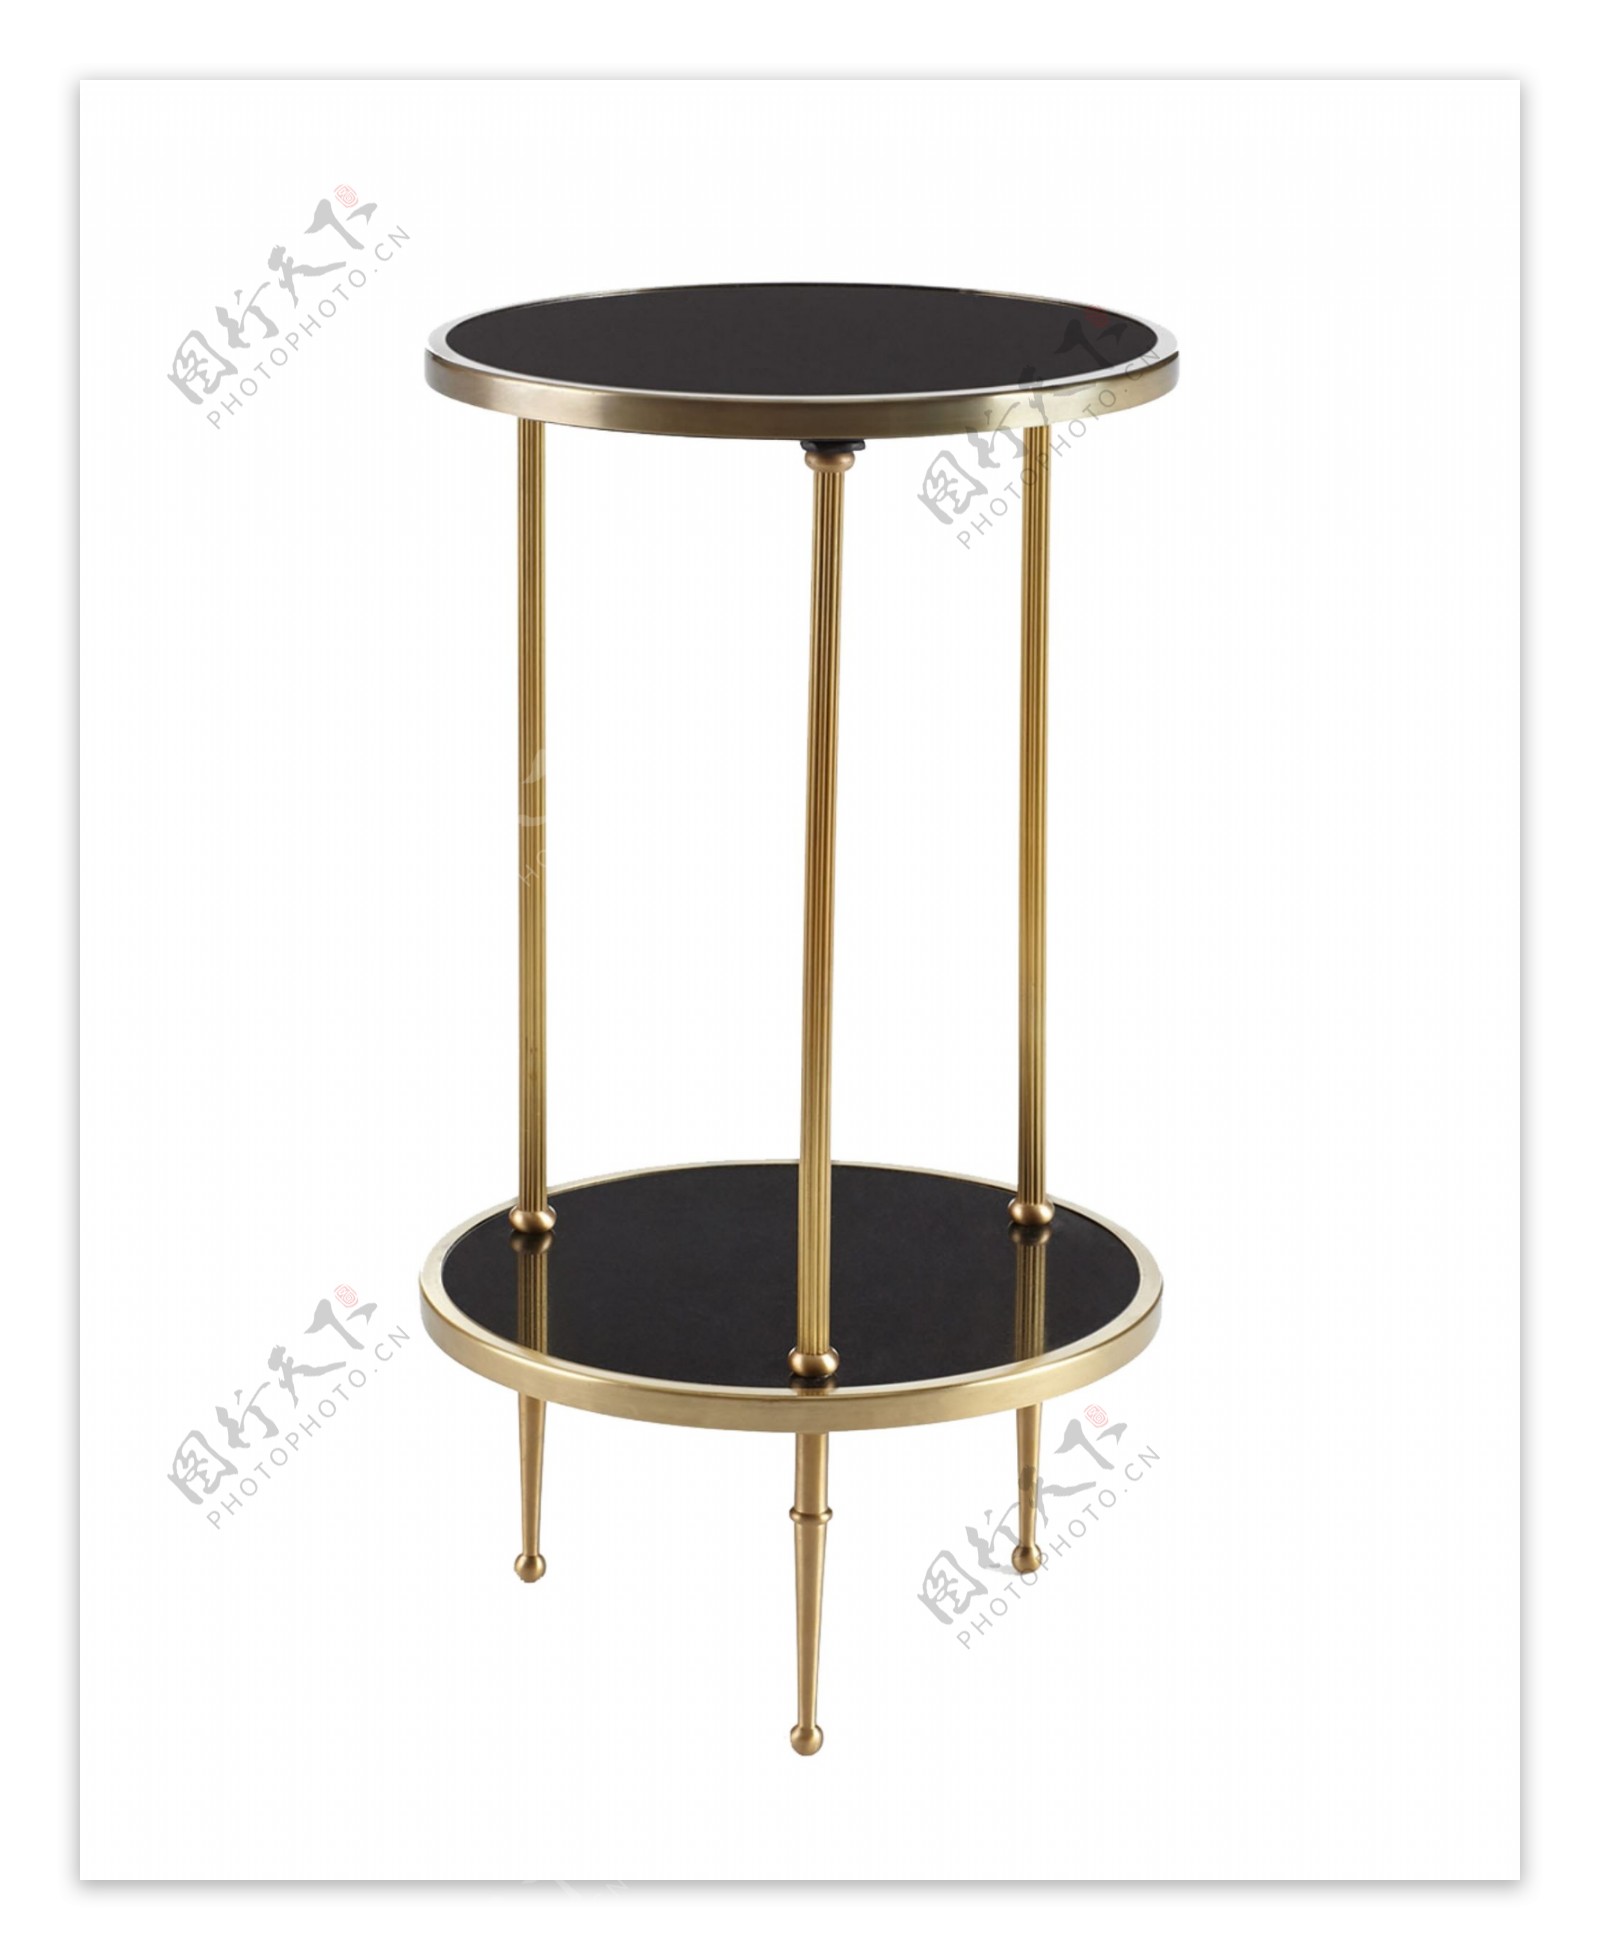 双层铁艺圆形桌子设计